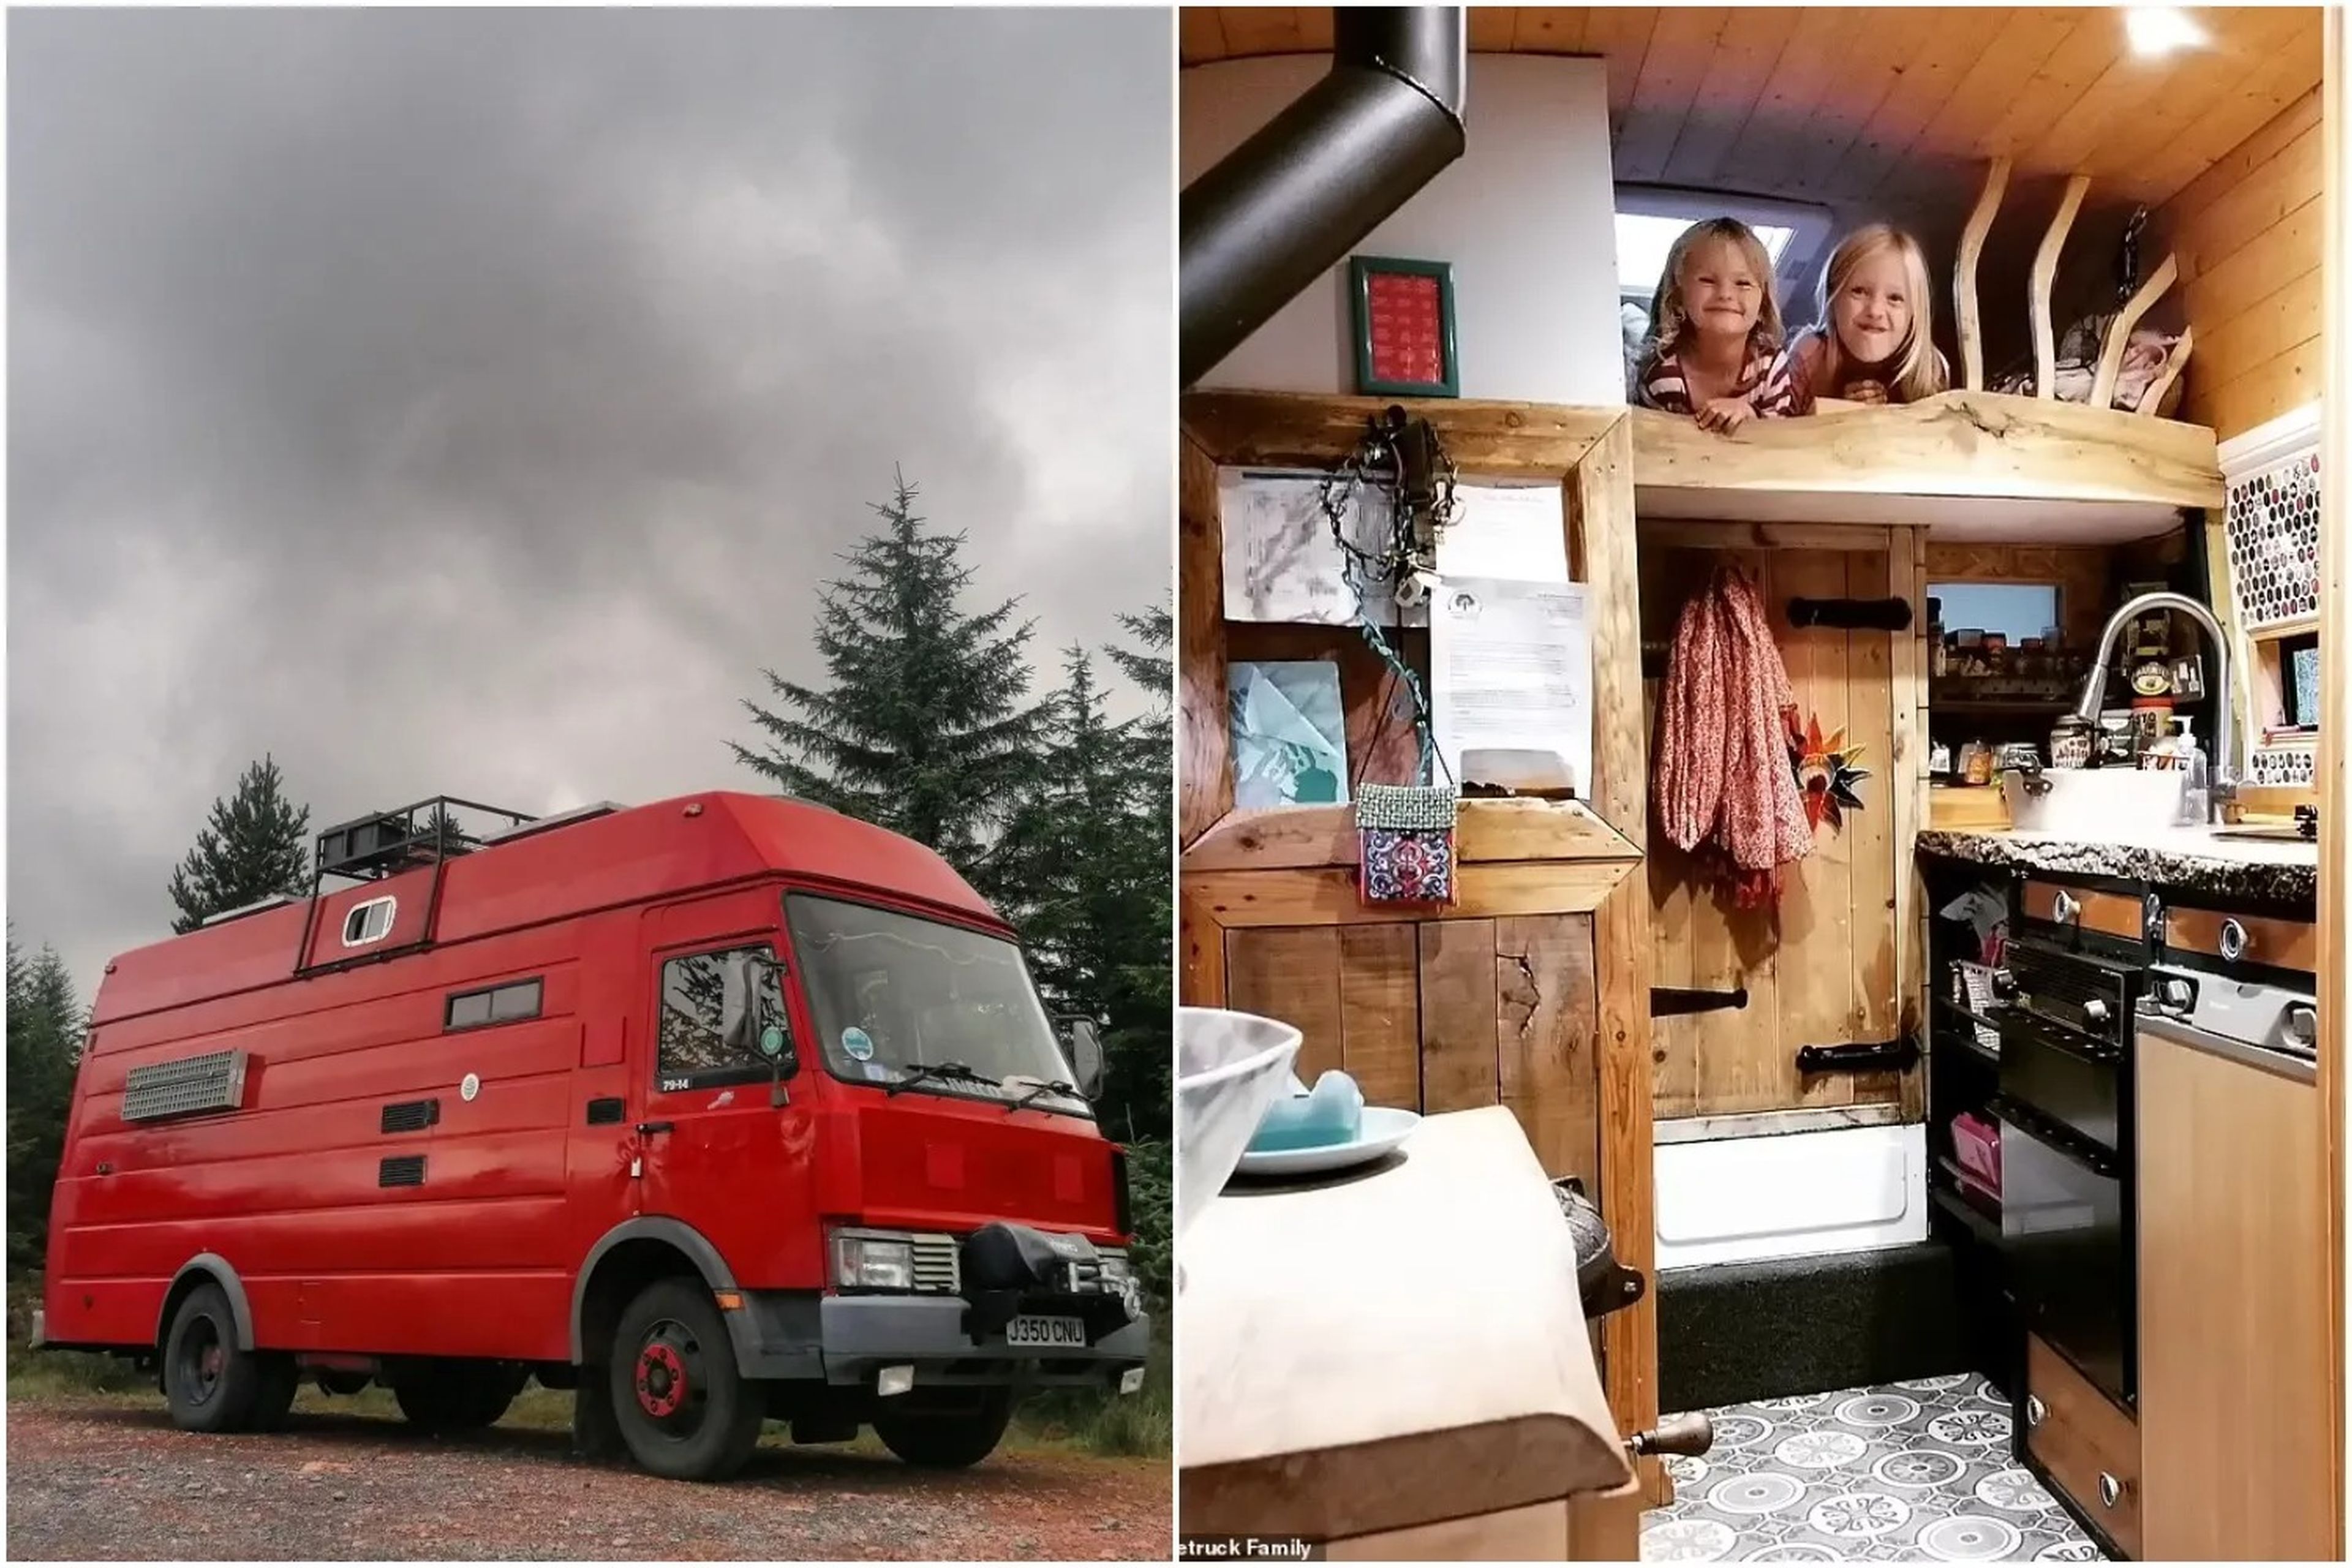 Jess Branton y Dave Smith han convertido un camión de bomberos en una pequeña vivienda.